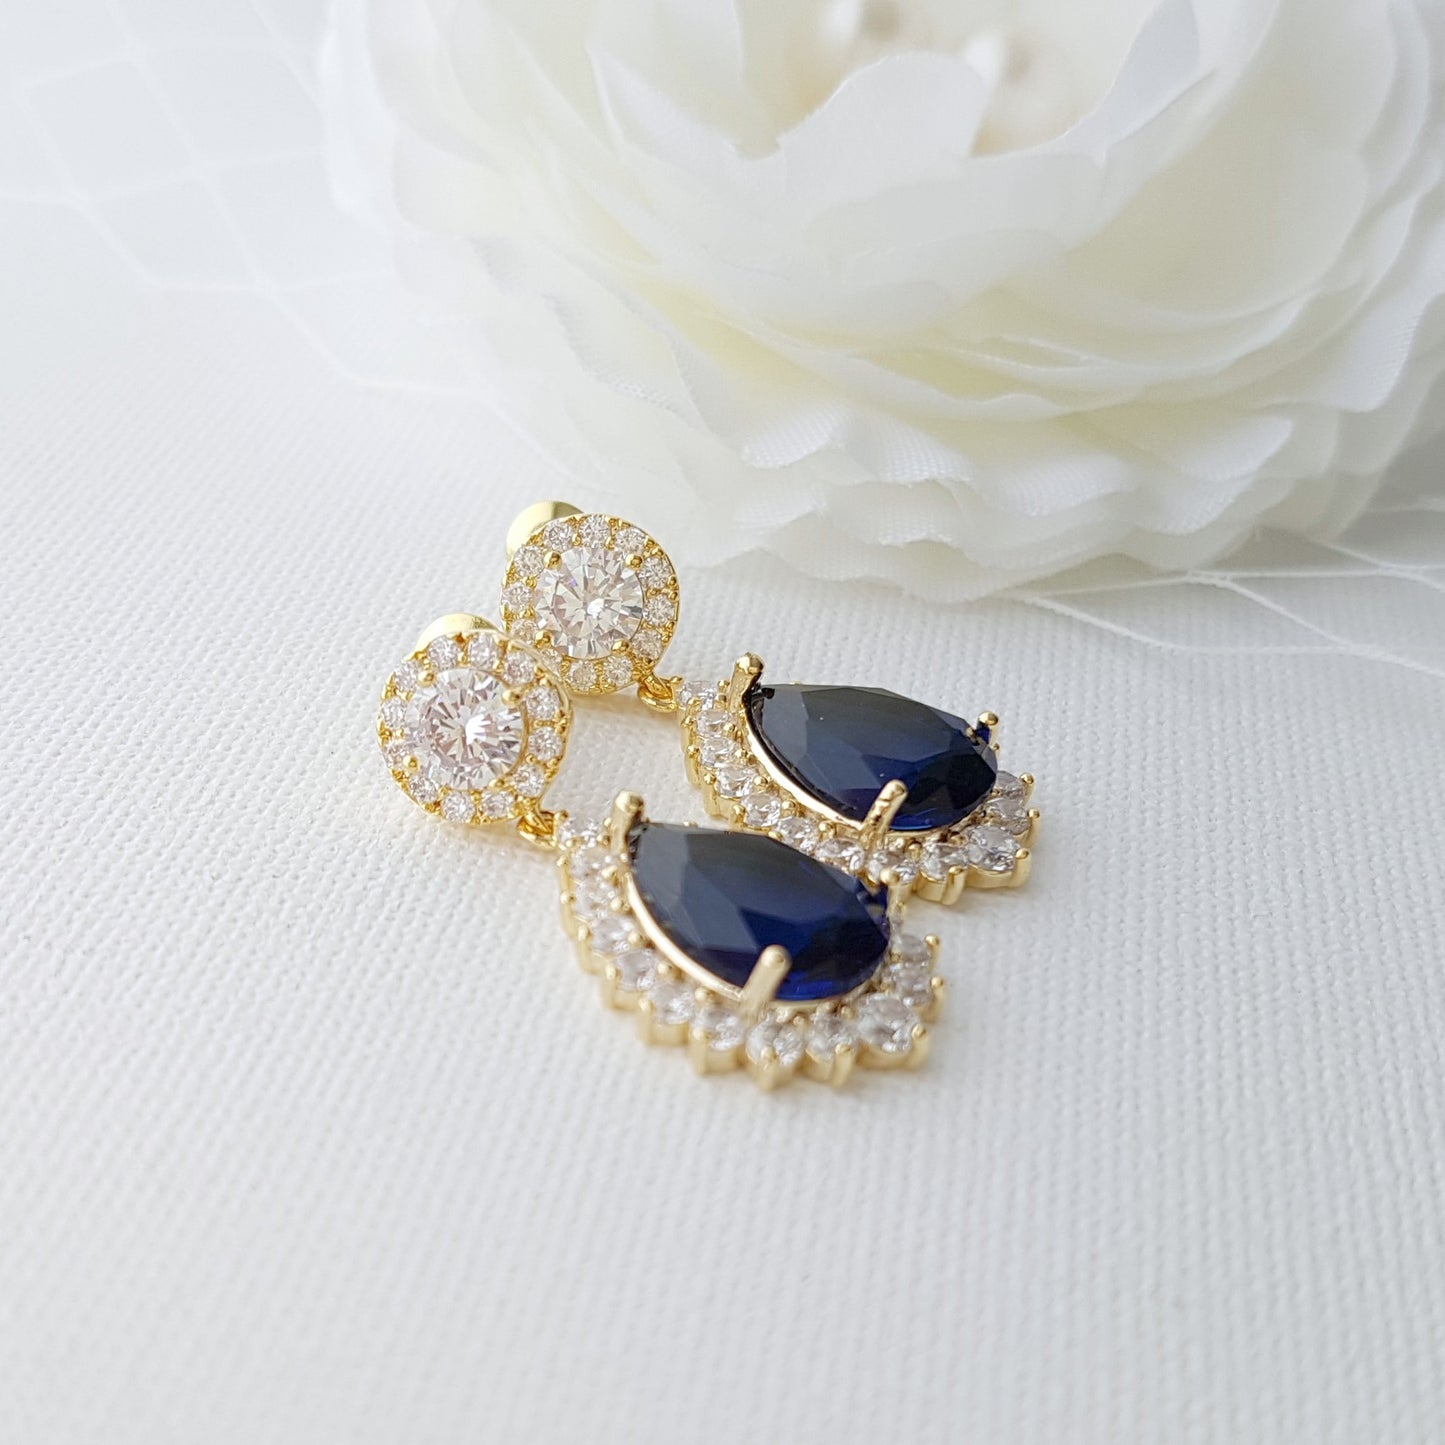 Elegant Blue Bridal Jewelry Set Something Blue for Weddings-Aoi